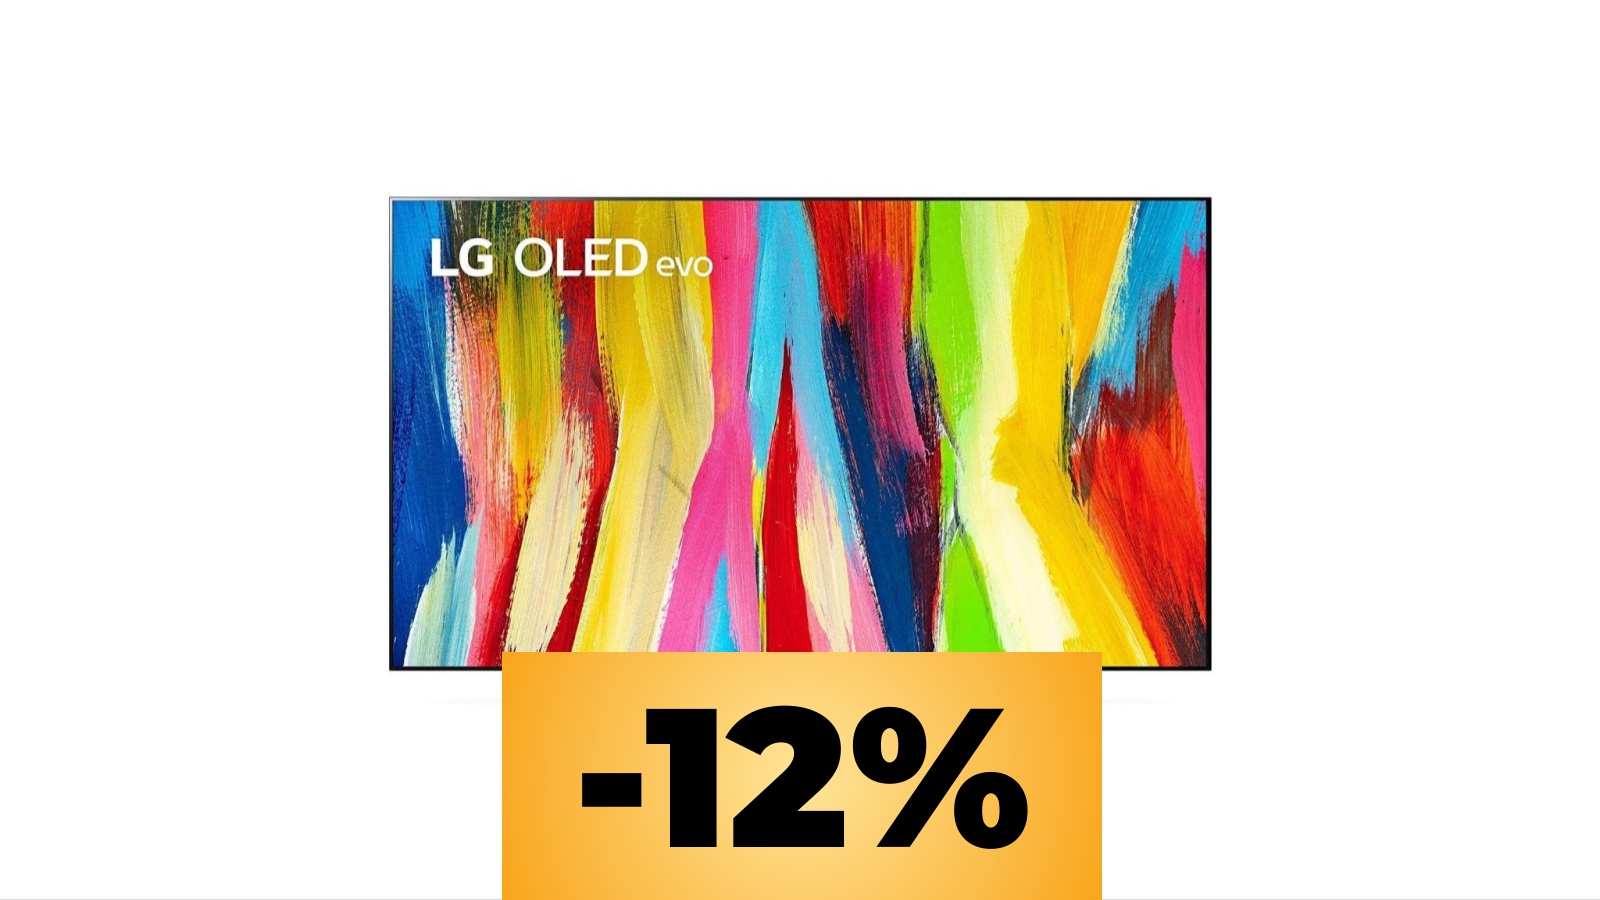 LG OLED evo Serie C2: la smart TV è al prezzo minimo storico su Amazon Italia